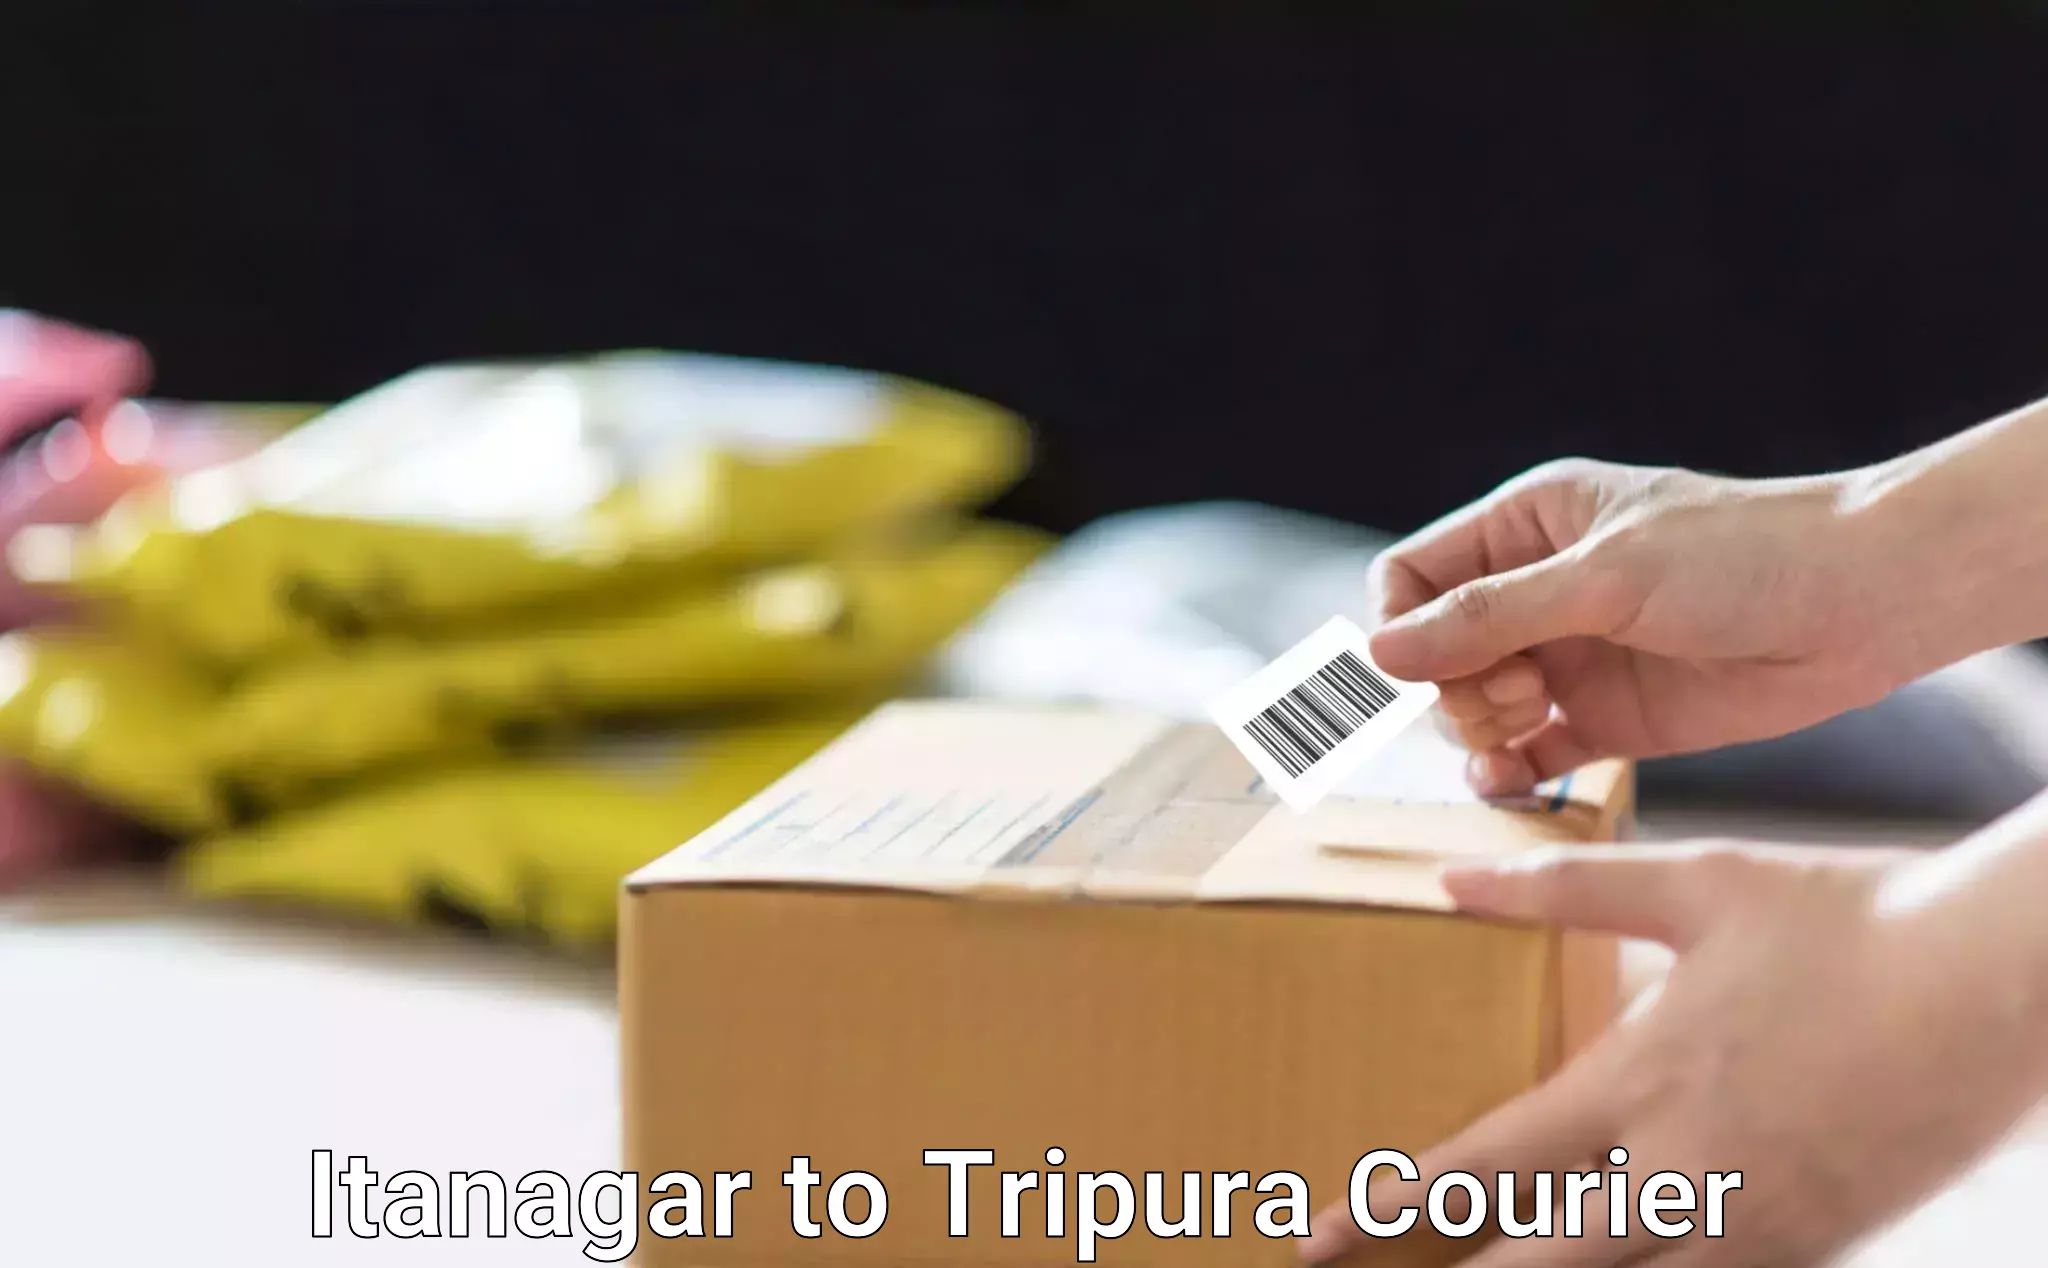 Customizable shipping options Itanagar to Manughat